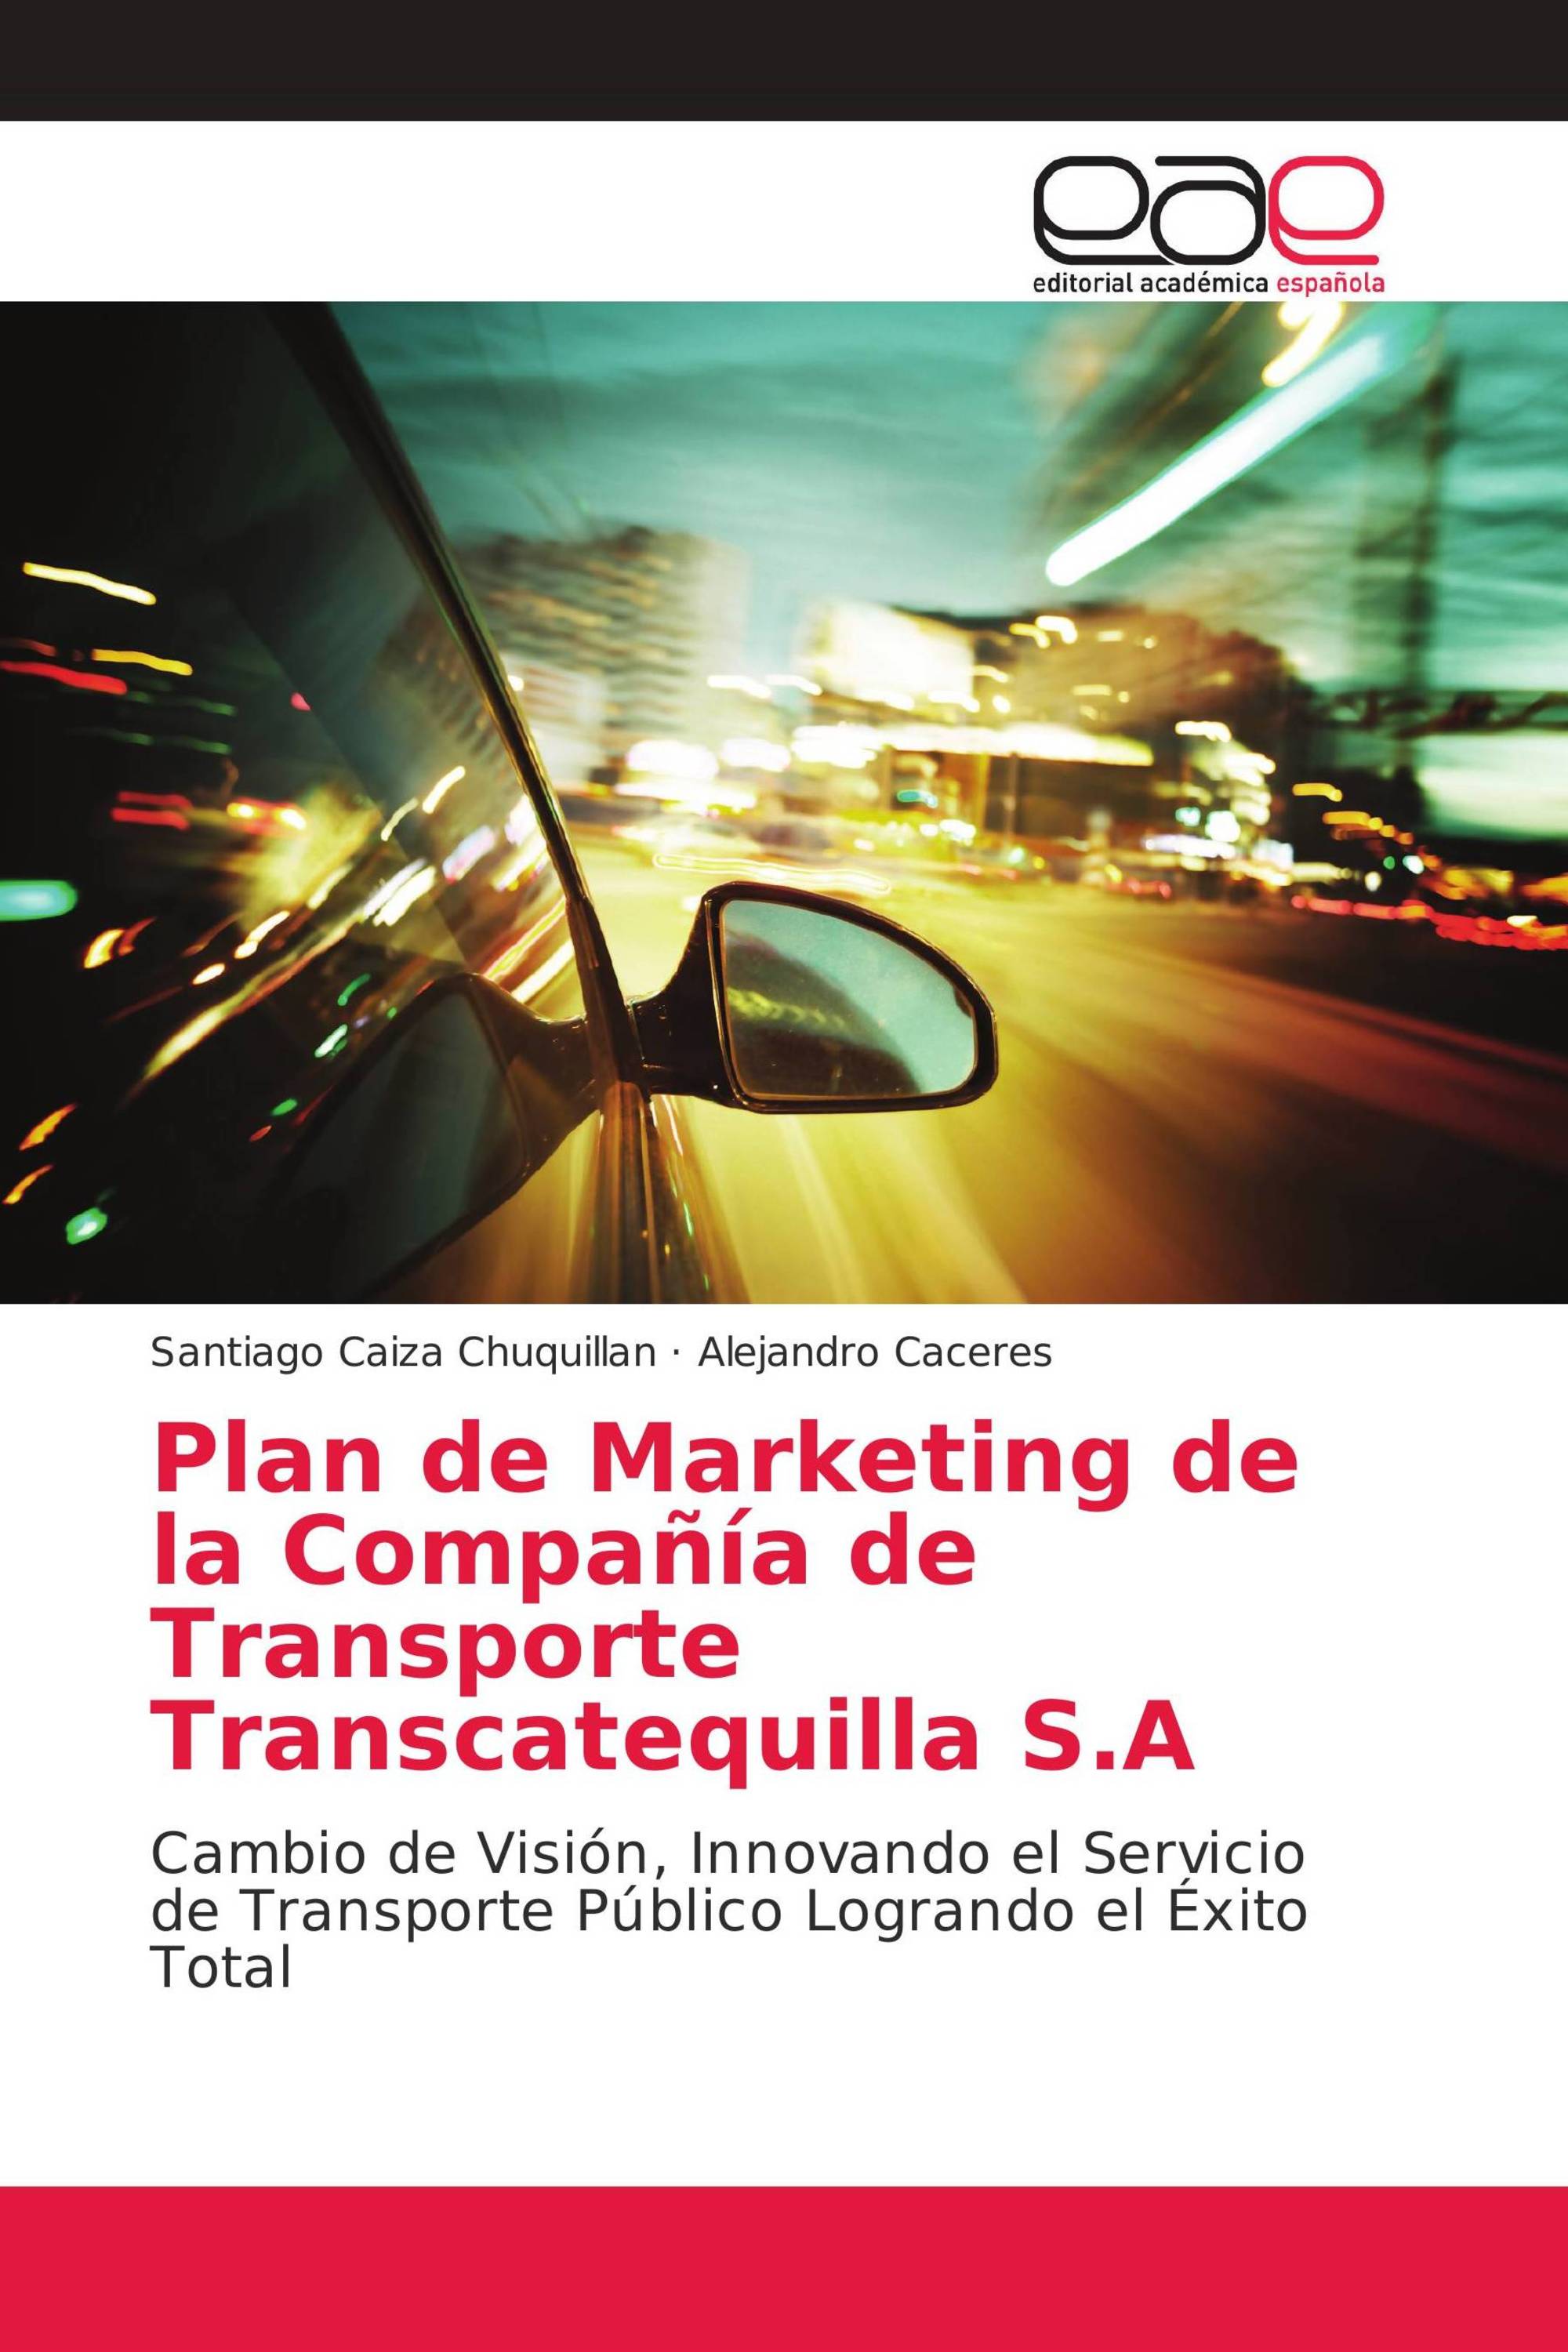 Plan de Marketing de la Compañía de Transporte Transcatequilla S.A